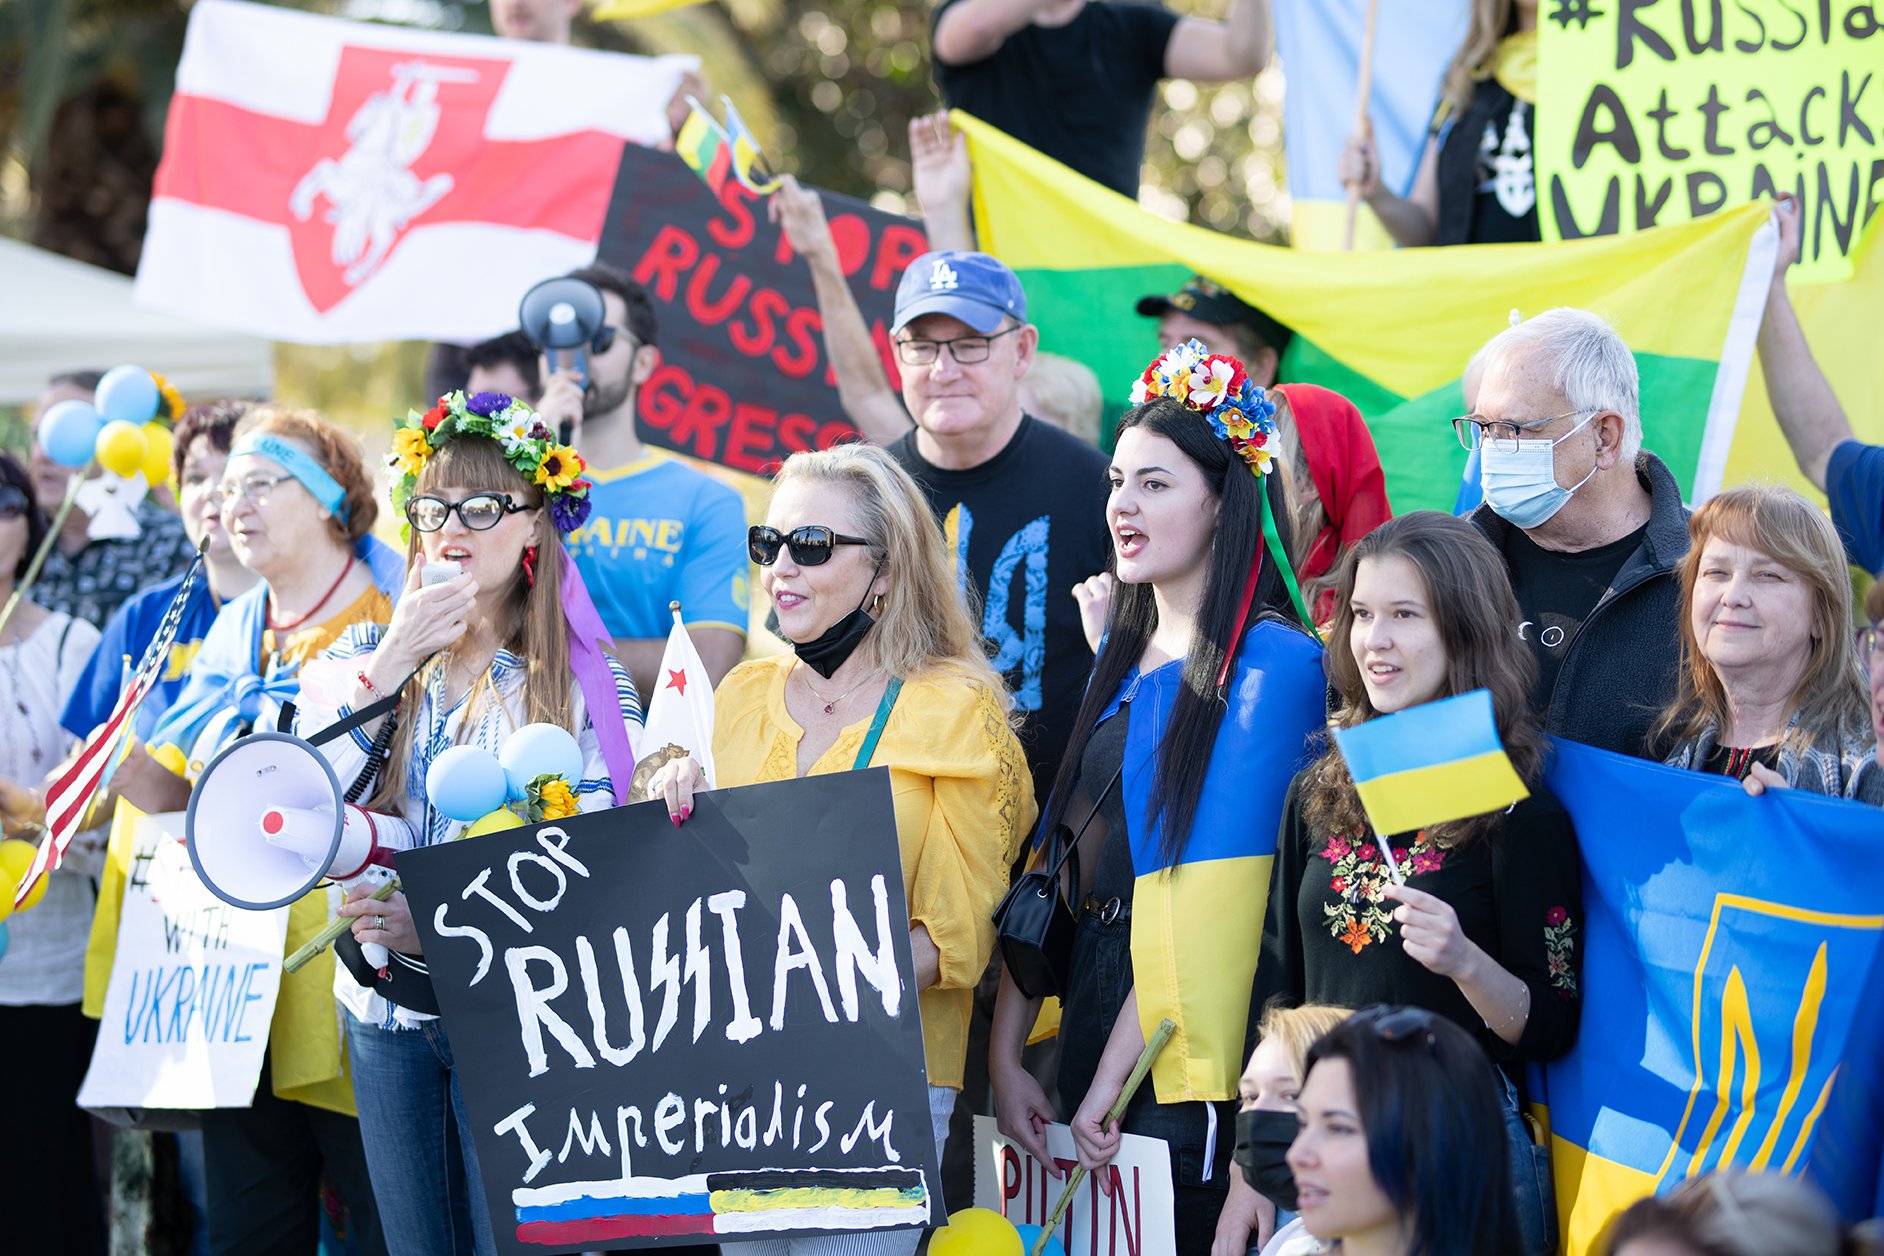 Trotz der erhöhten Spannungen sind große Proteste in Kiew und anderswo friedlich und entschieden pro-ukrainisch geblieben.